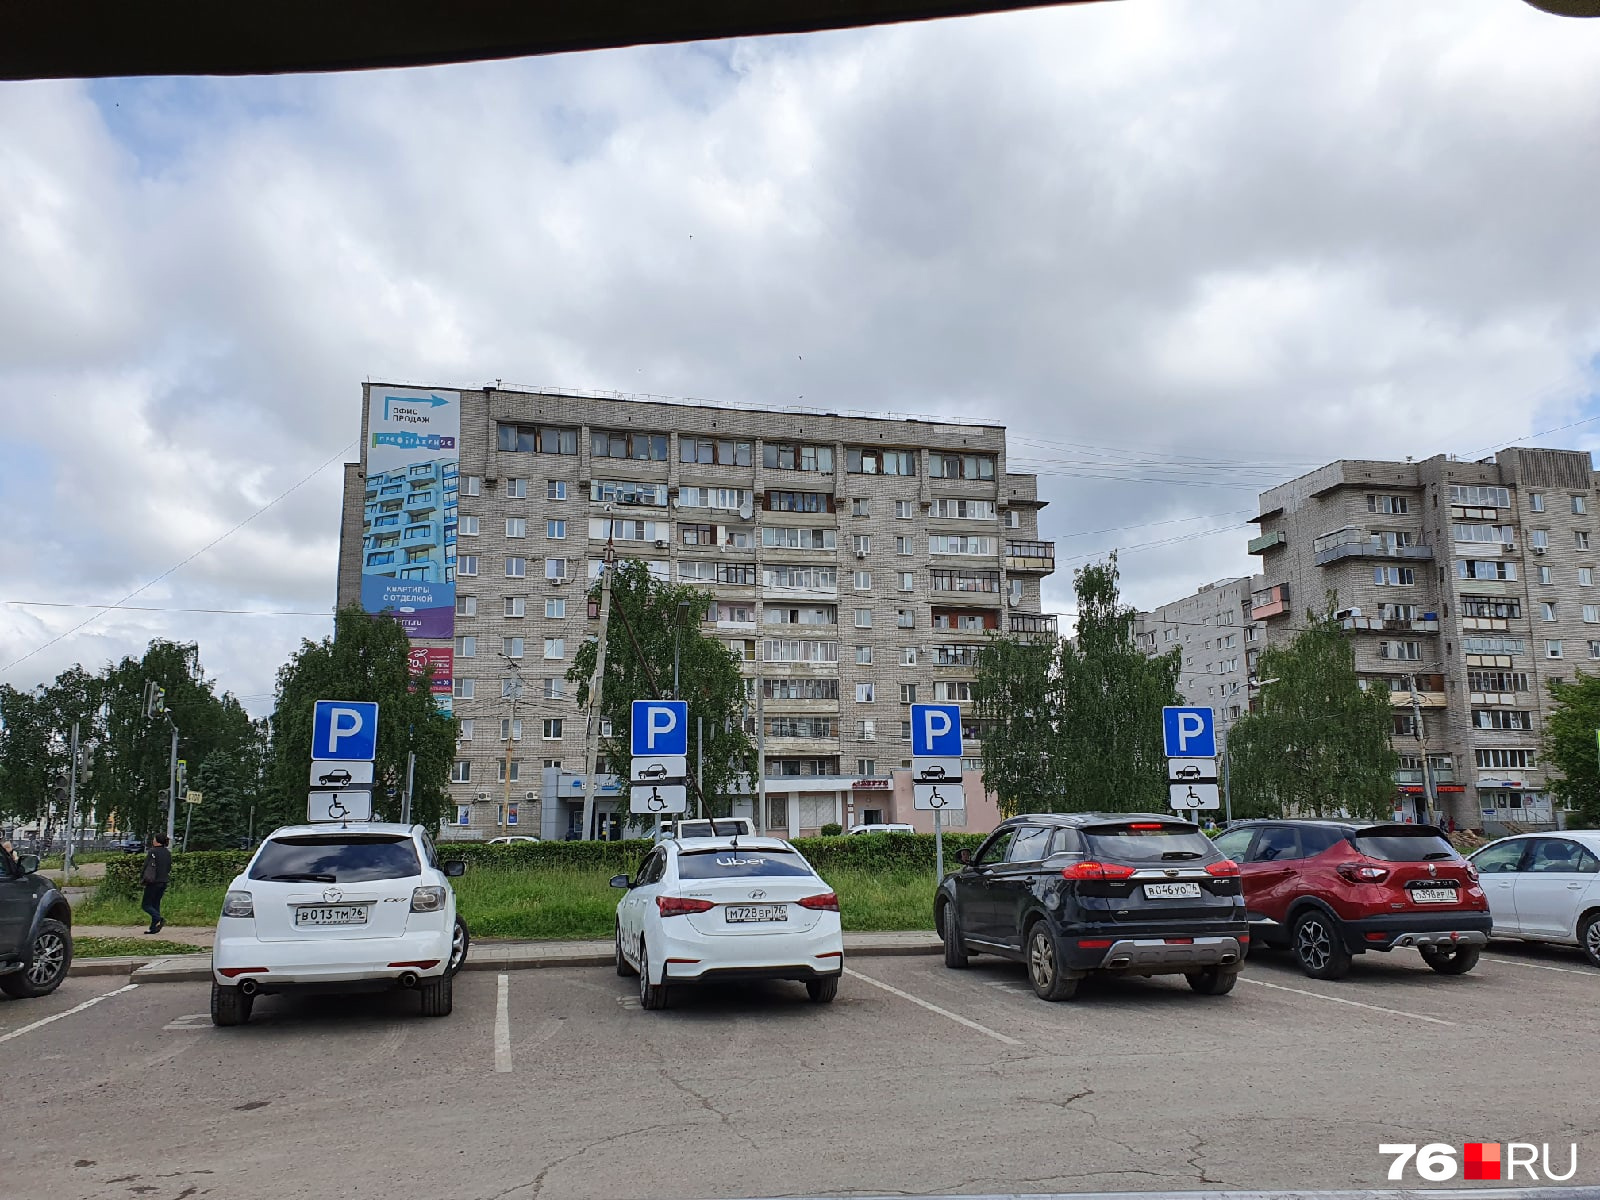 8 июня 2021 года в 12:39 — парковка у «Макдоналдса» в Заволжском районе. Сколько настоящих инвалидов вы видите?